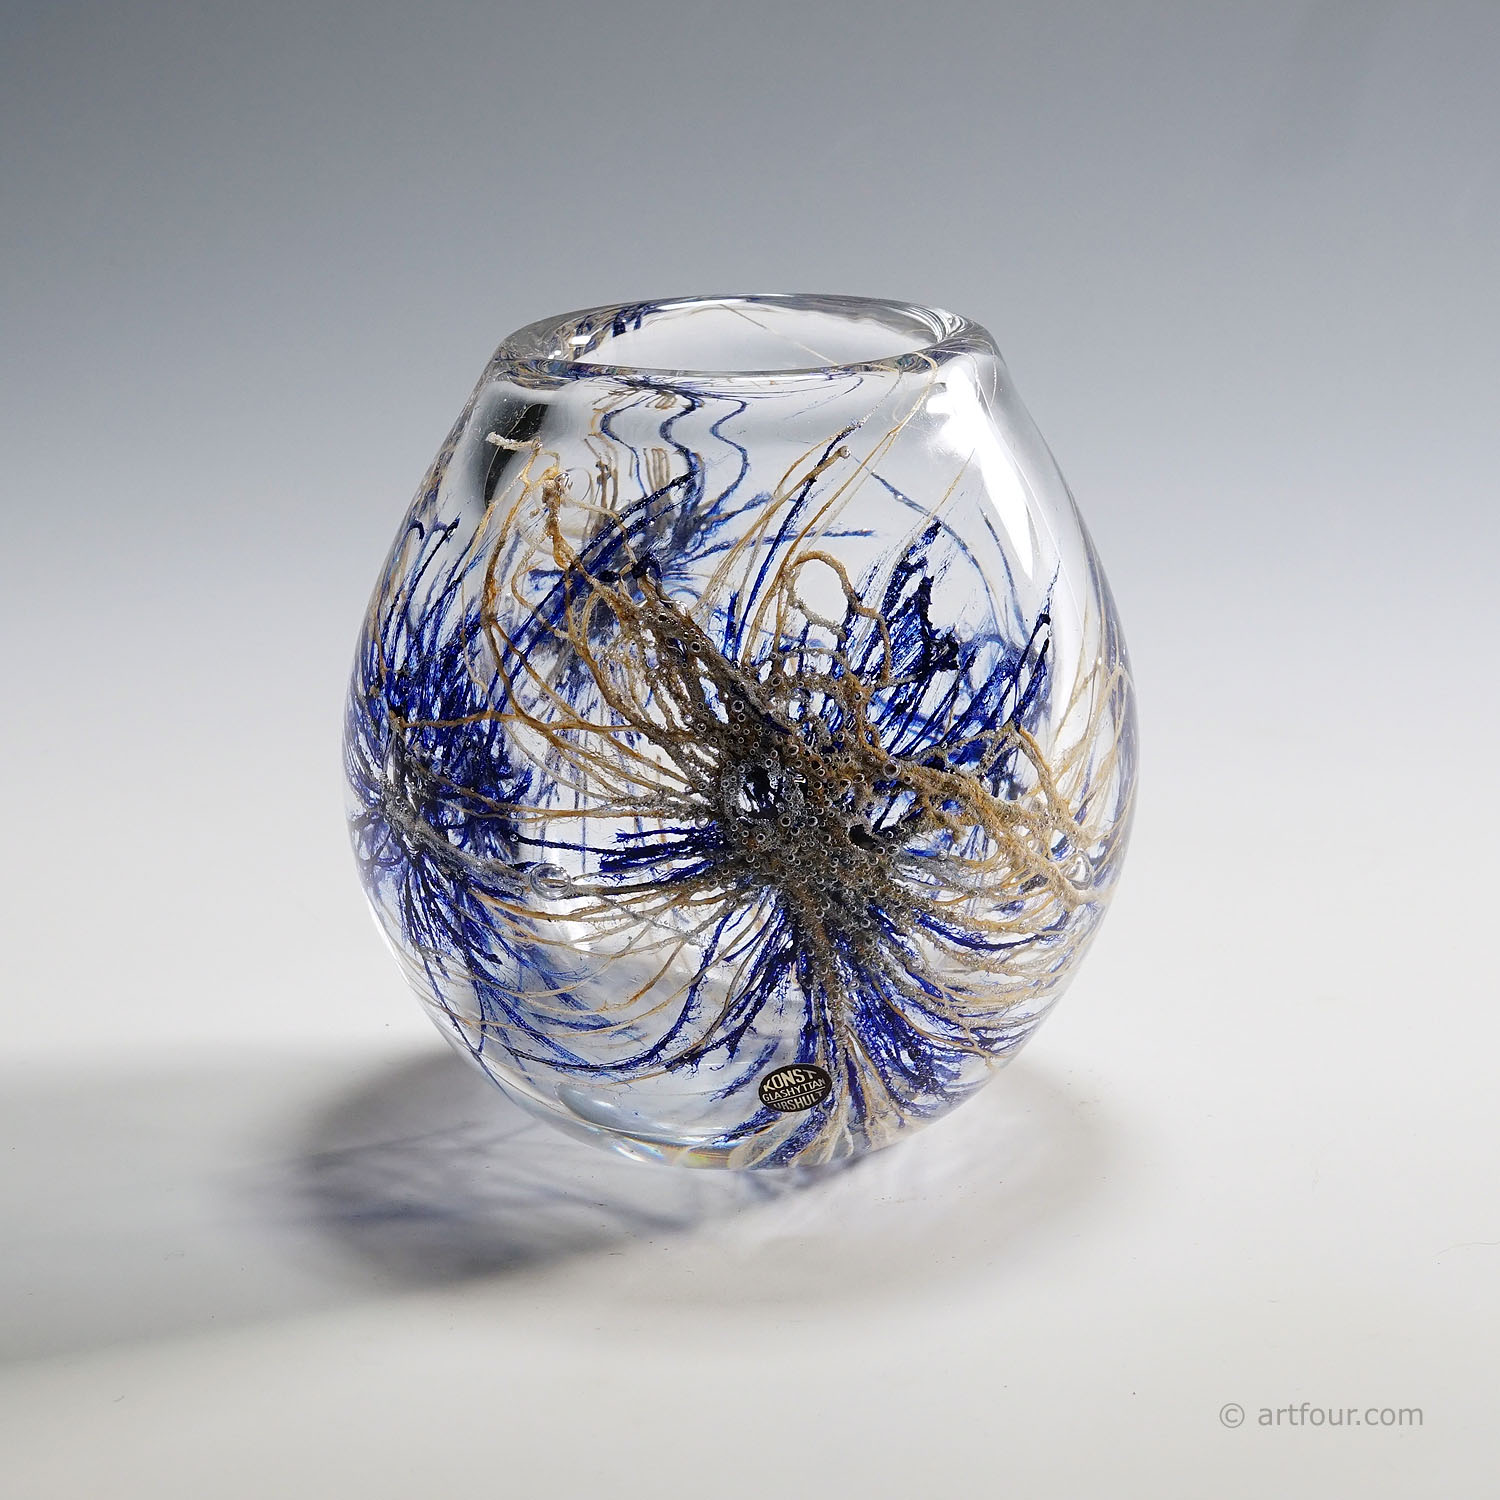 Vintage Graal Artglass Vase by Goran Stroemgren for Art Glassworks Urshult Sweden